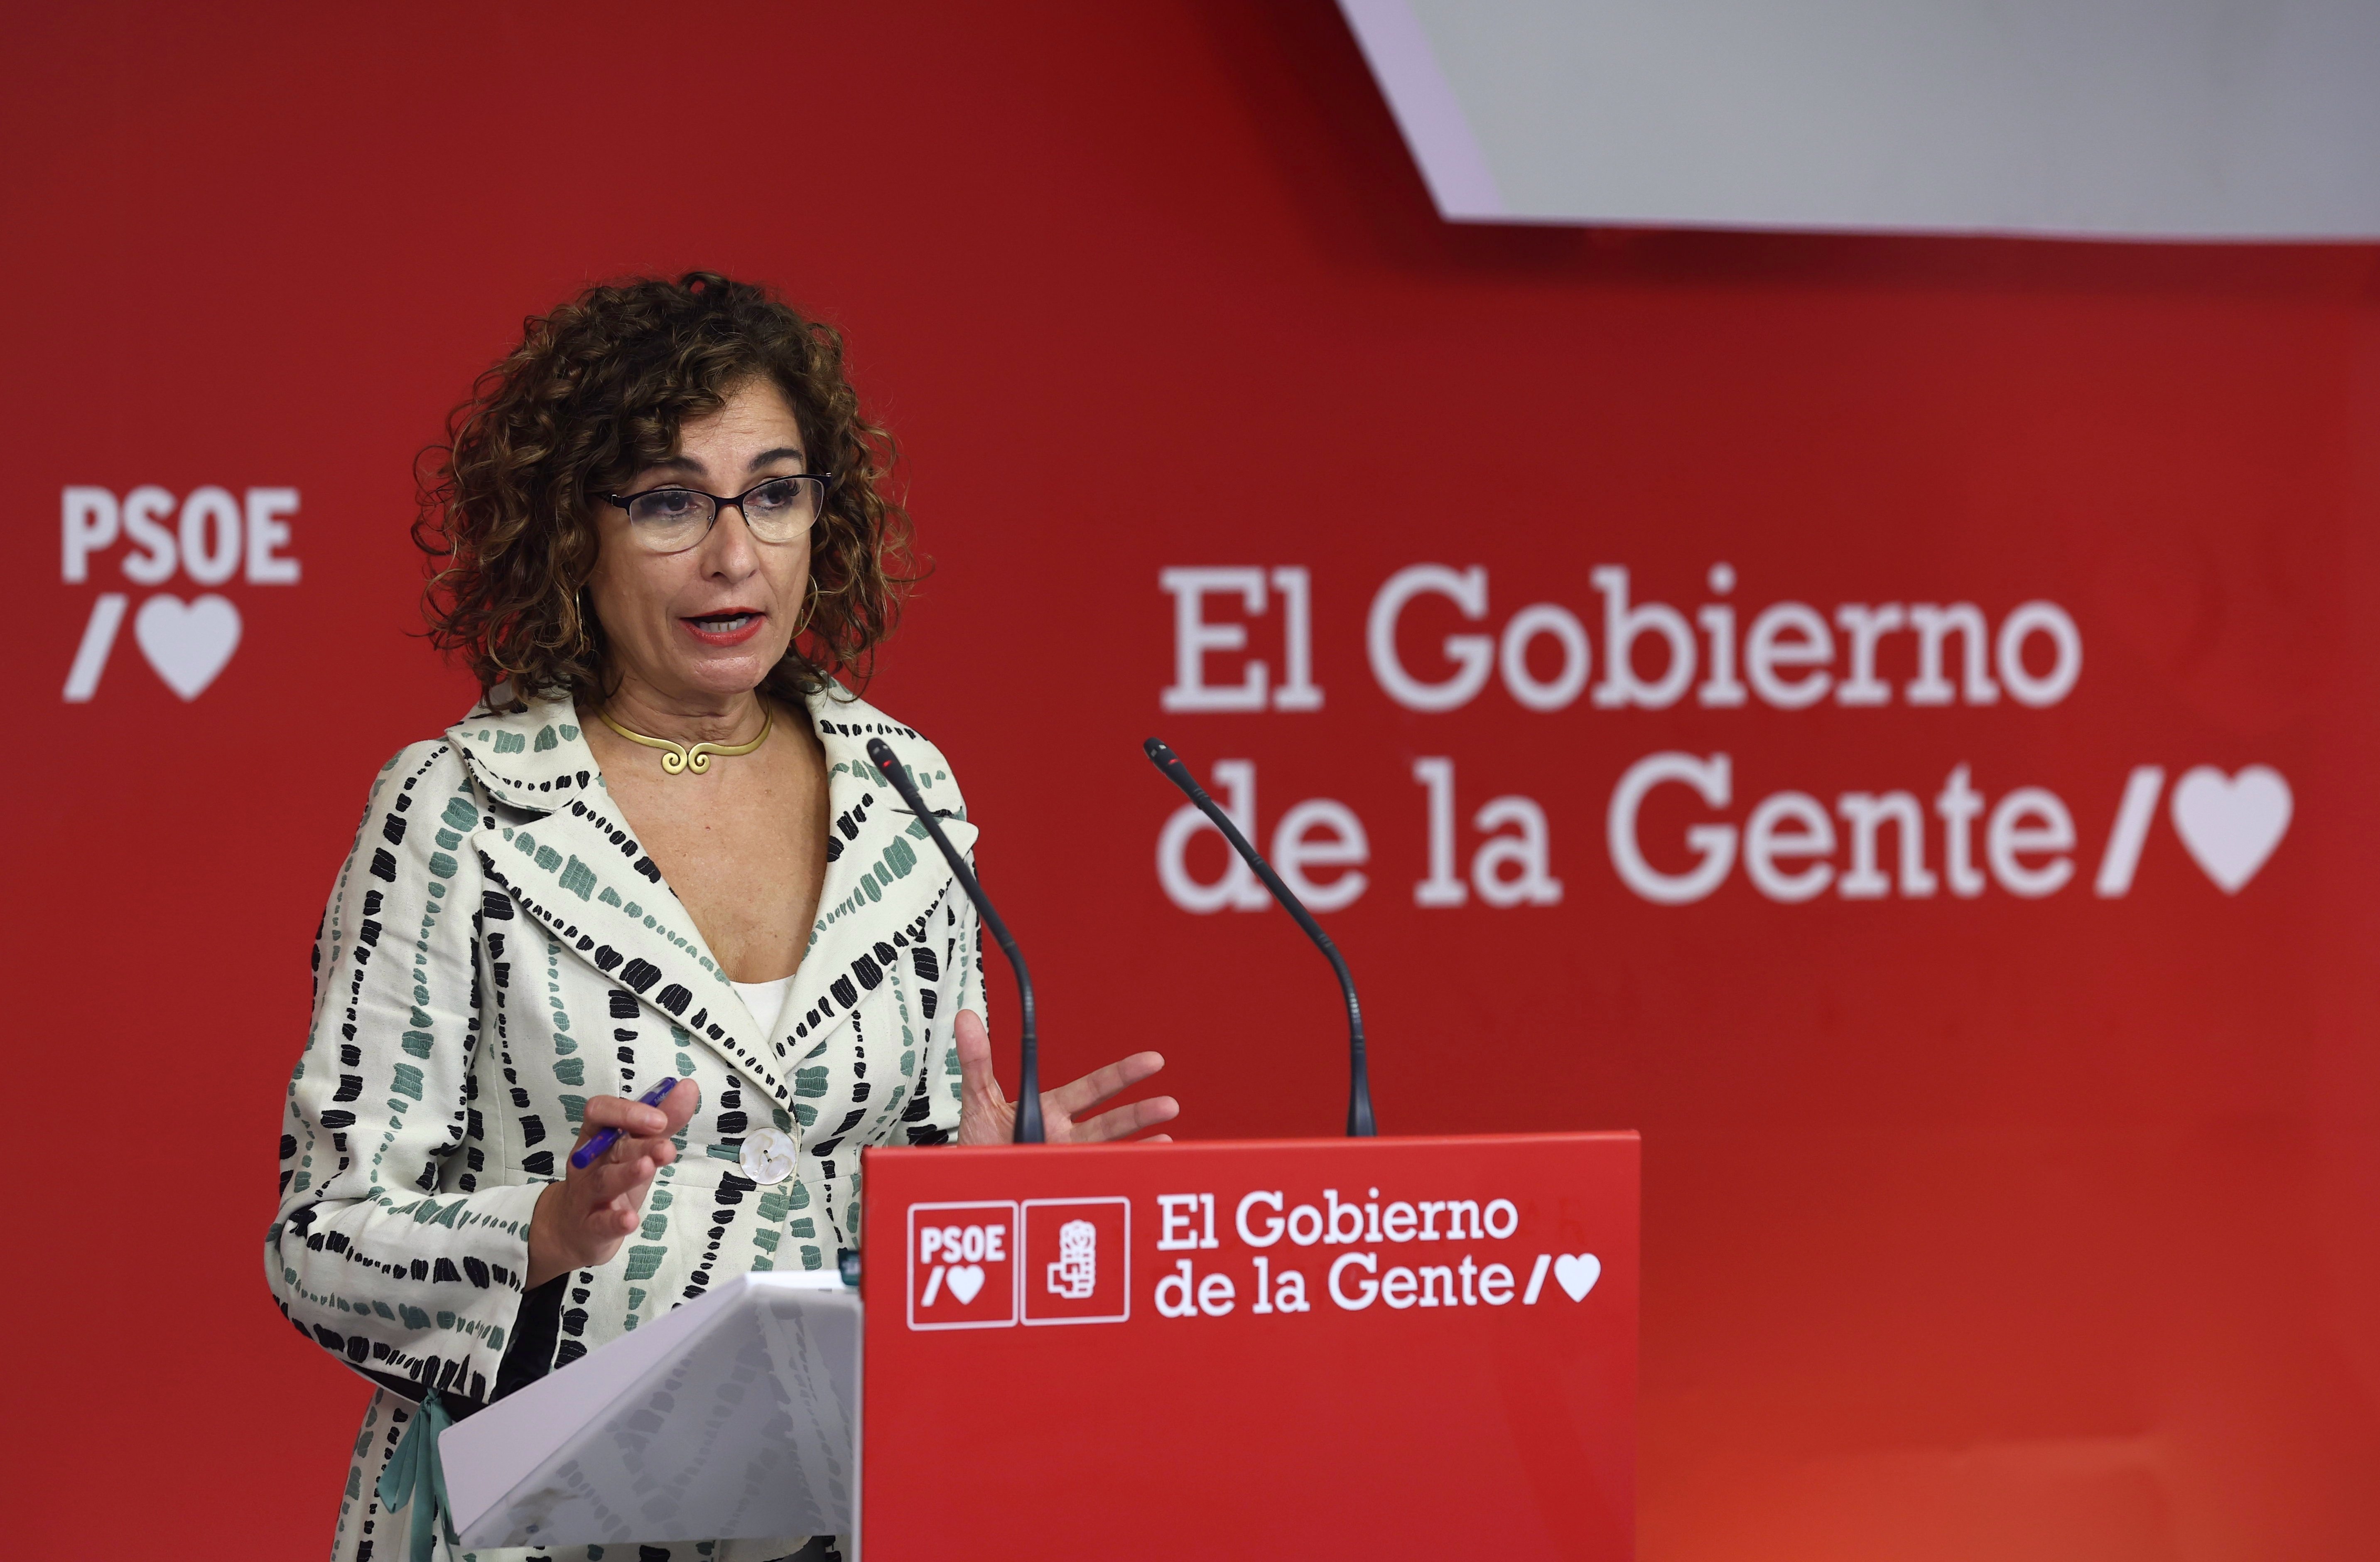 Sánchez prepara una subida de impuestos ante el "populismo fiscal" de Núñez Feijóo